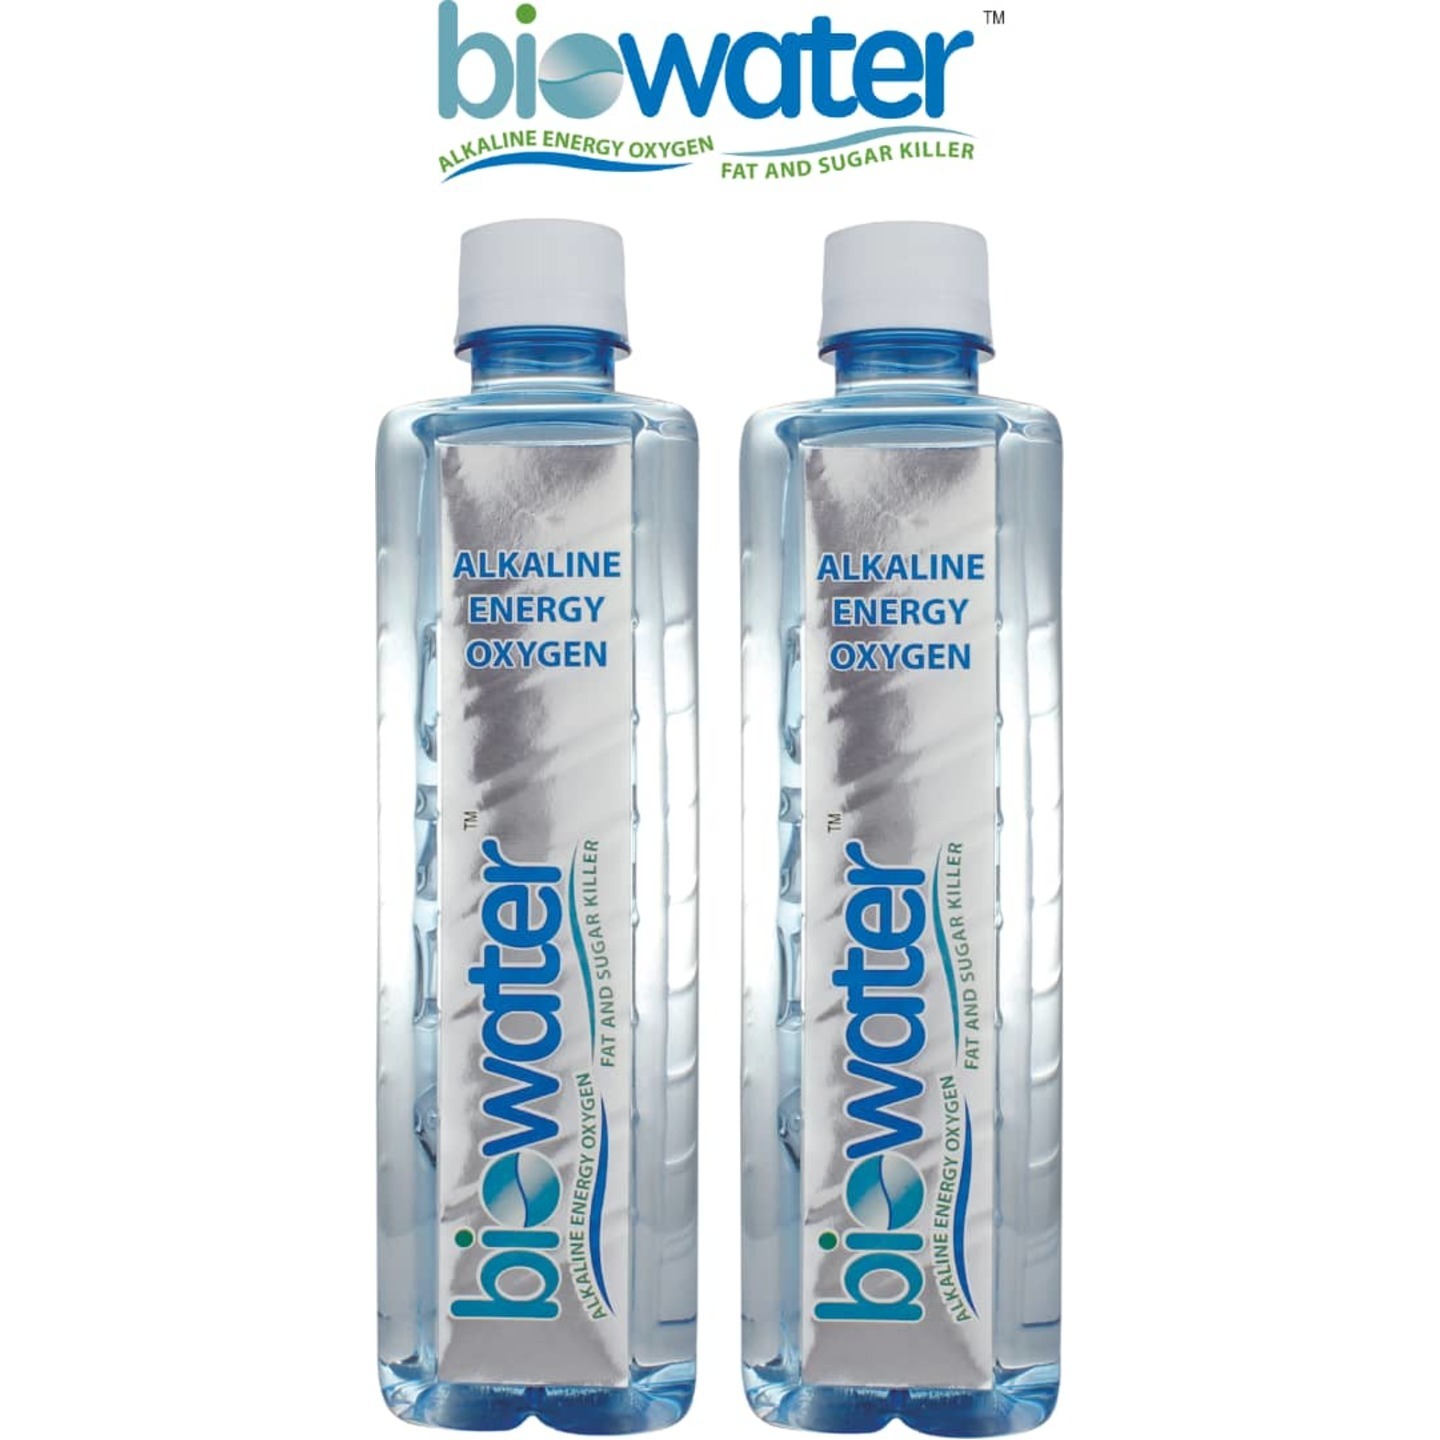 biowater Alkaline Energy Oxygen Drinking Water